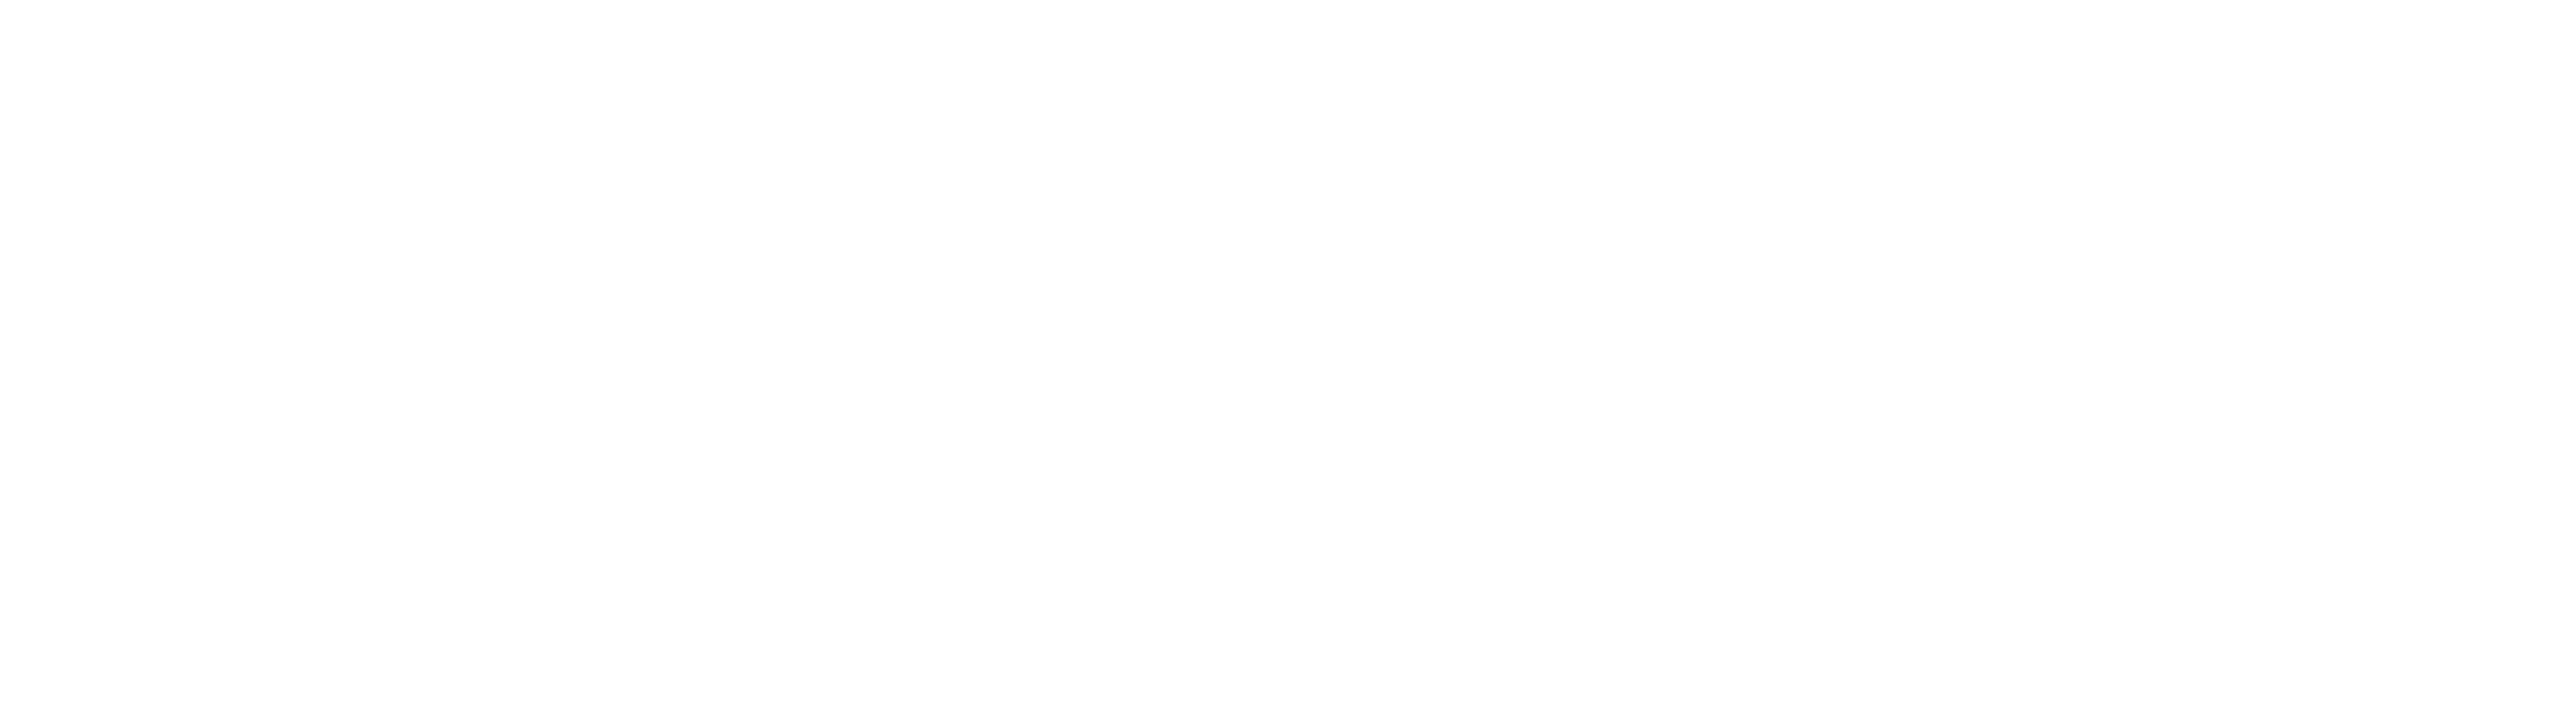 Logo operadora branca (1)